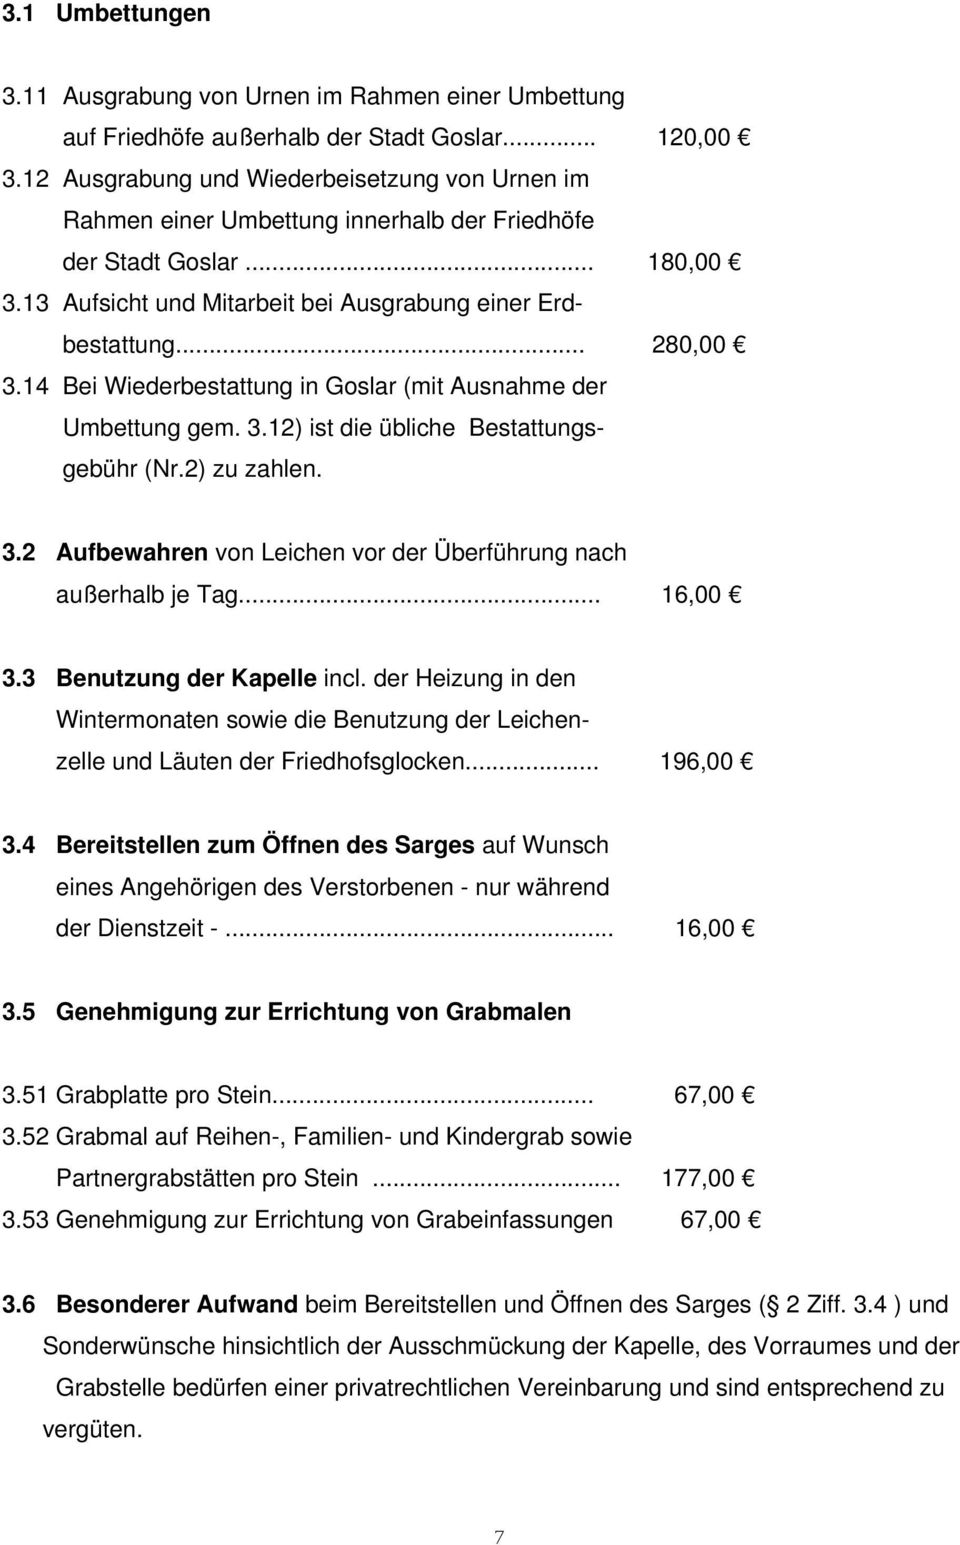 14 Bei Wiederbestattung in Goslar (mit Ausnahme der Umbettung gem. 3.12) ist die übliche Bestattungsgebühr (Nr.2) zu zahlen. 3.2 Aufbewahren von Leichen vor der Überführung nach außerhalb je Tag.